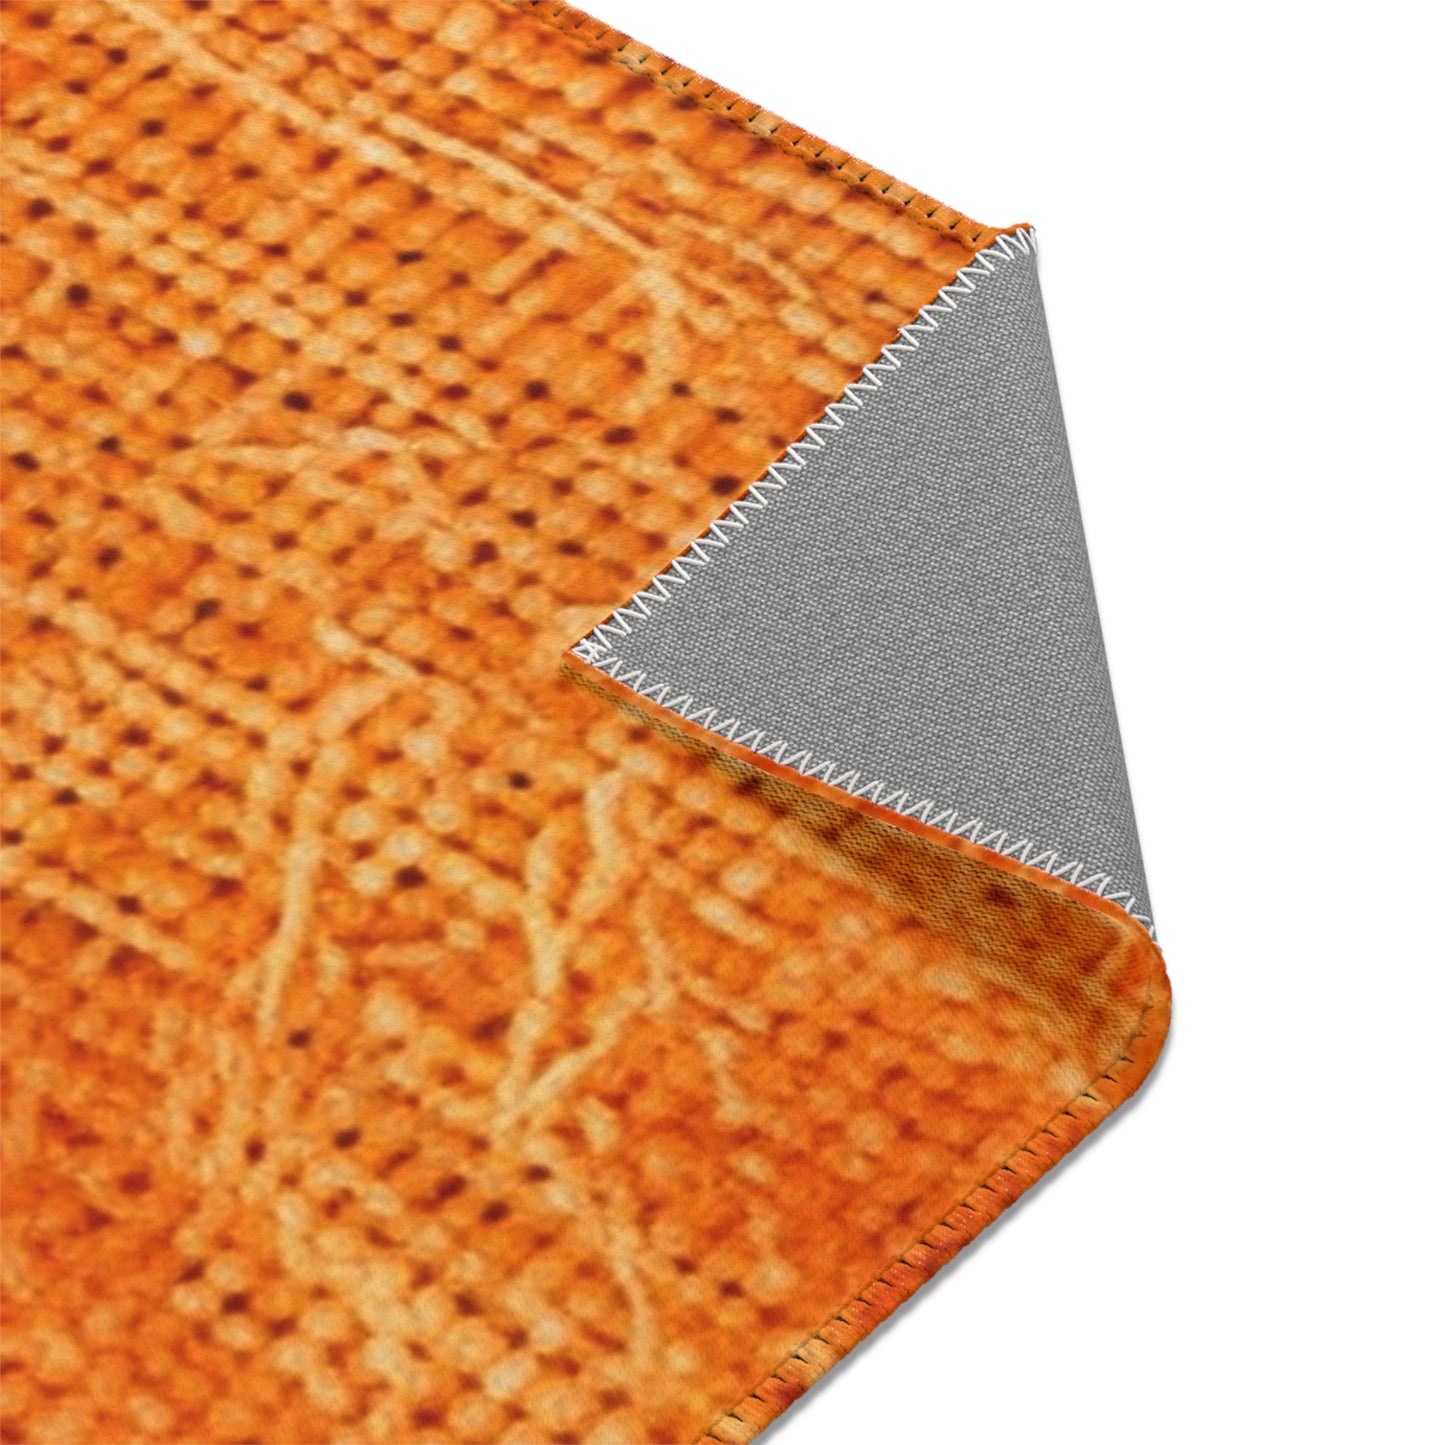 Burnt Orange/Rust: Denim-Inspired Autumn Fall Color Fabric - Area Rugs